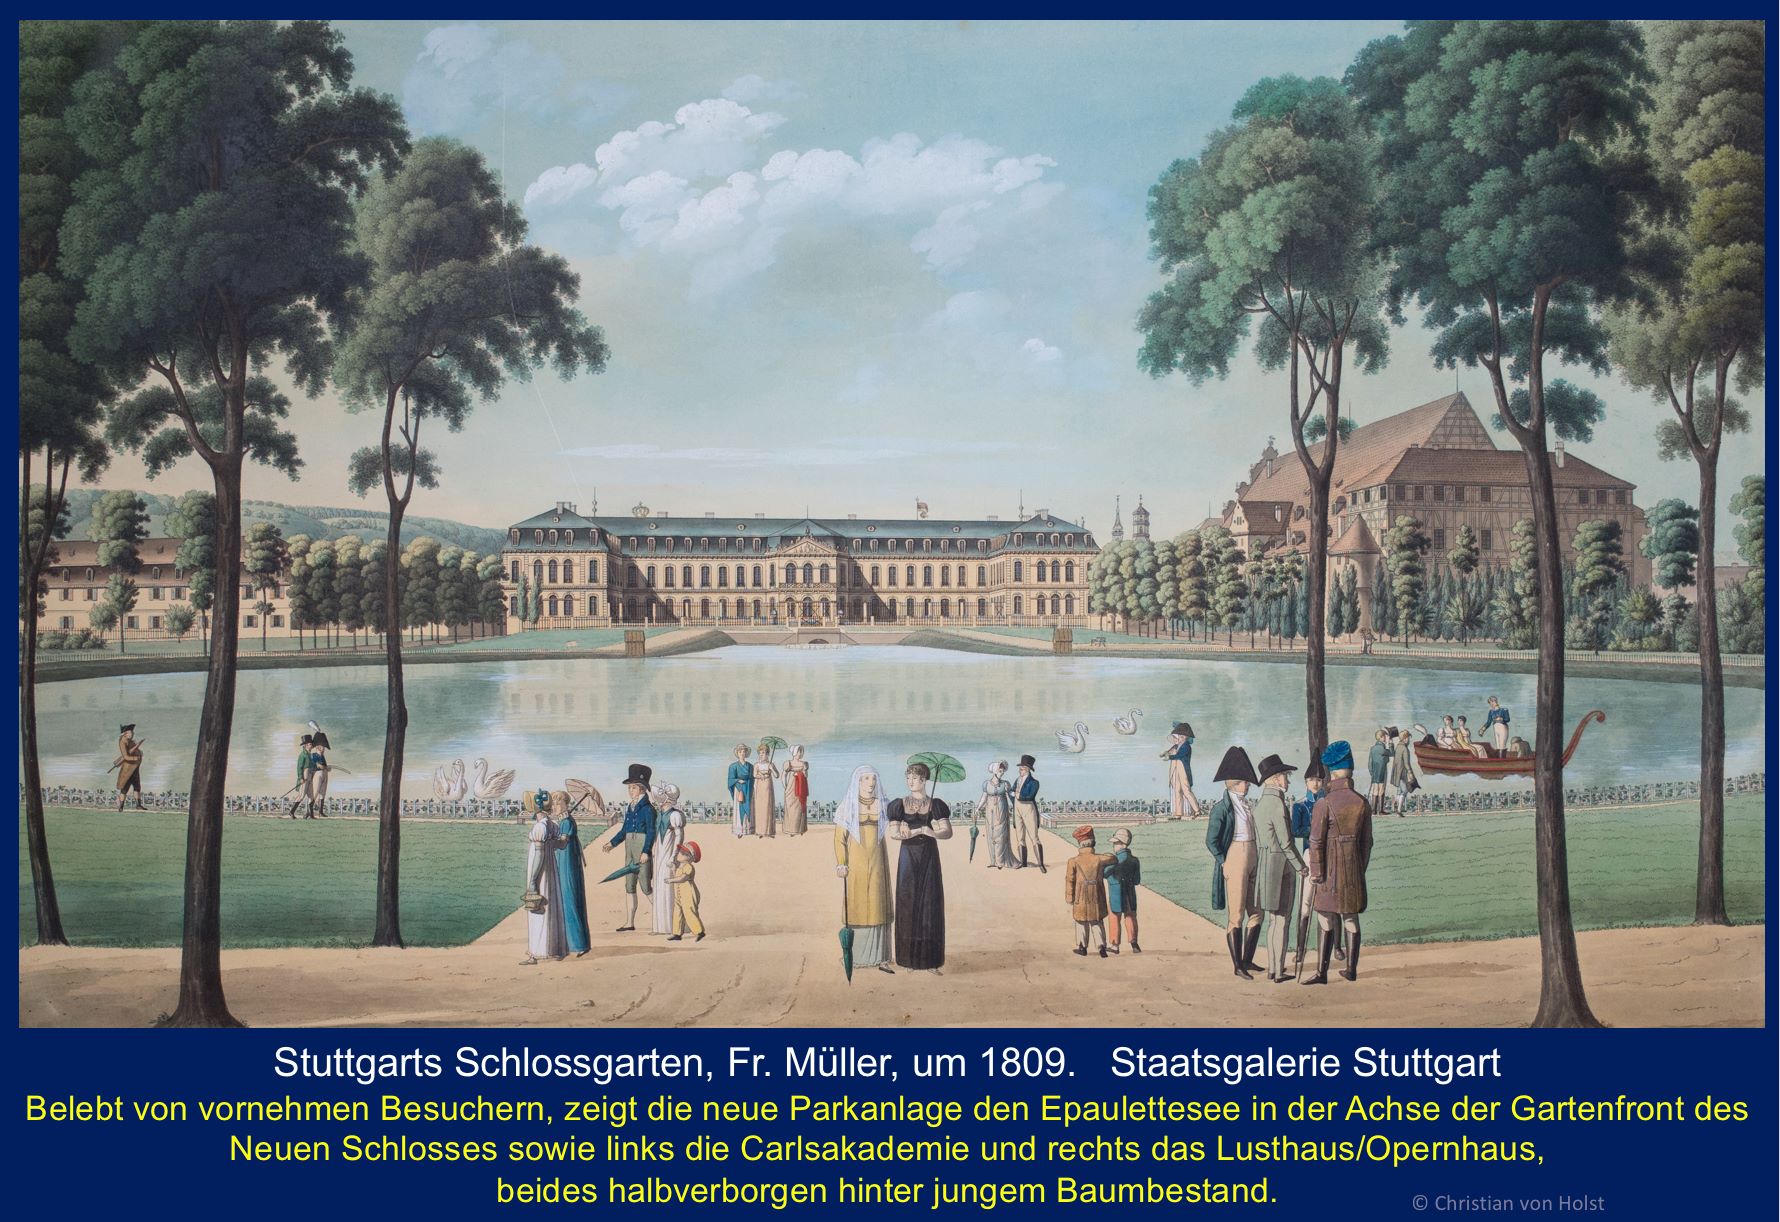 Ovalsee: Nikolaus Thouret, 1808-1850 – Schlossgarten mit Ovalsee um 1809 Staatsgalerie Stuttgart